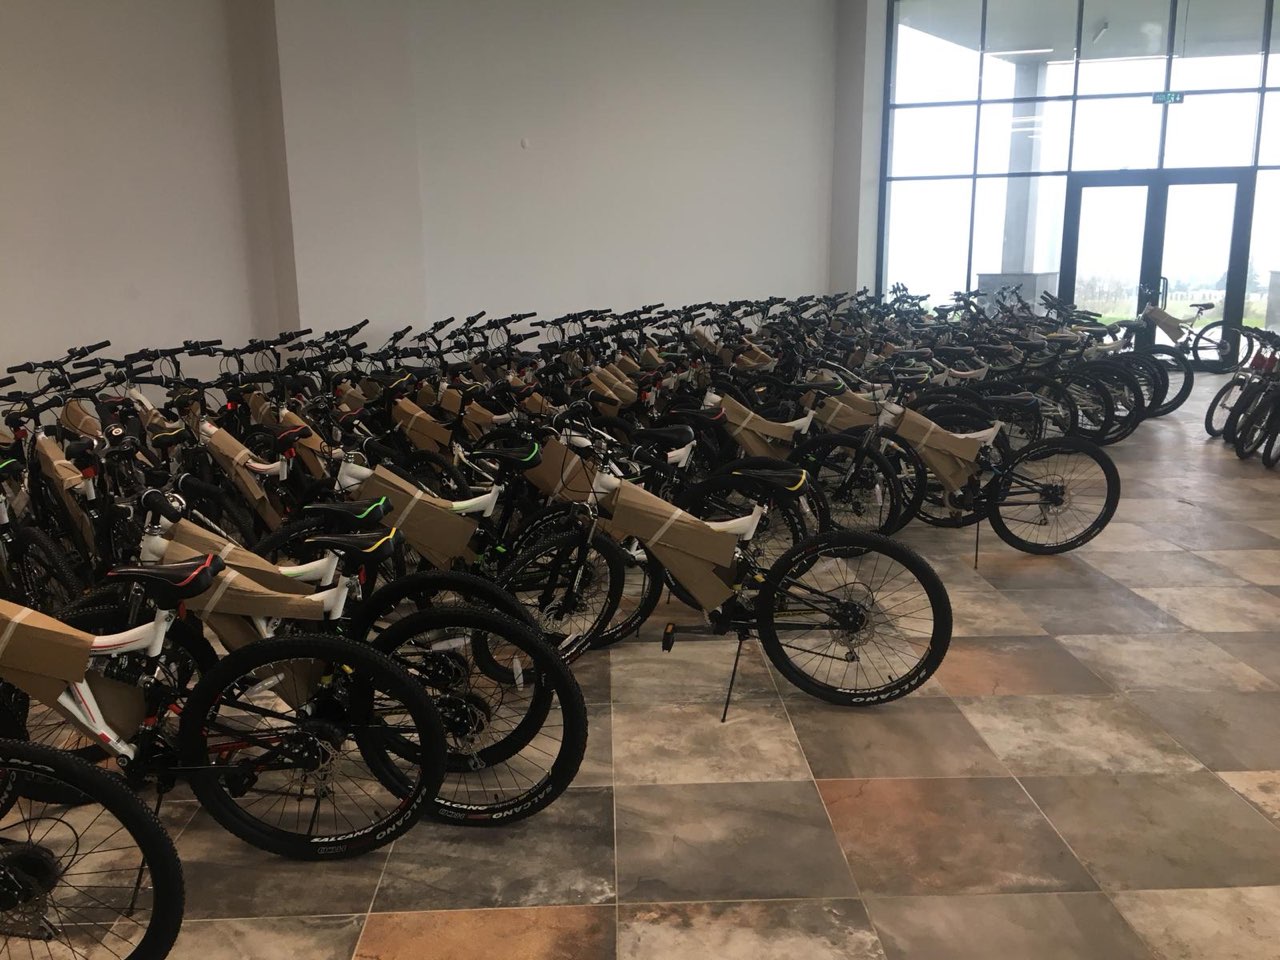 300 bisiklet sahiplerini buldu